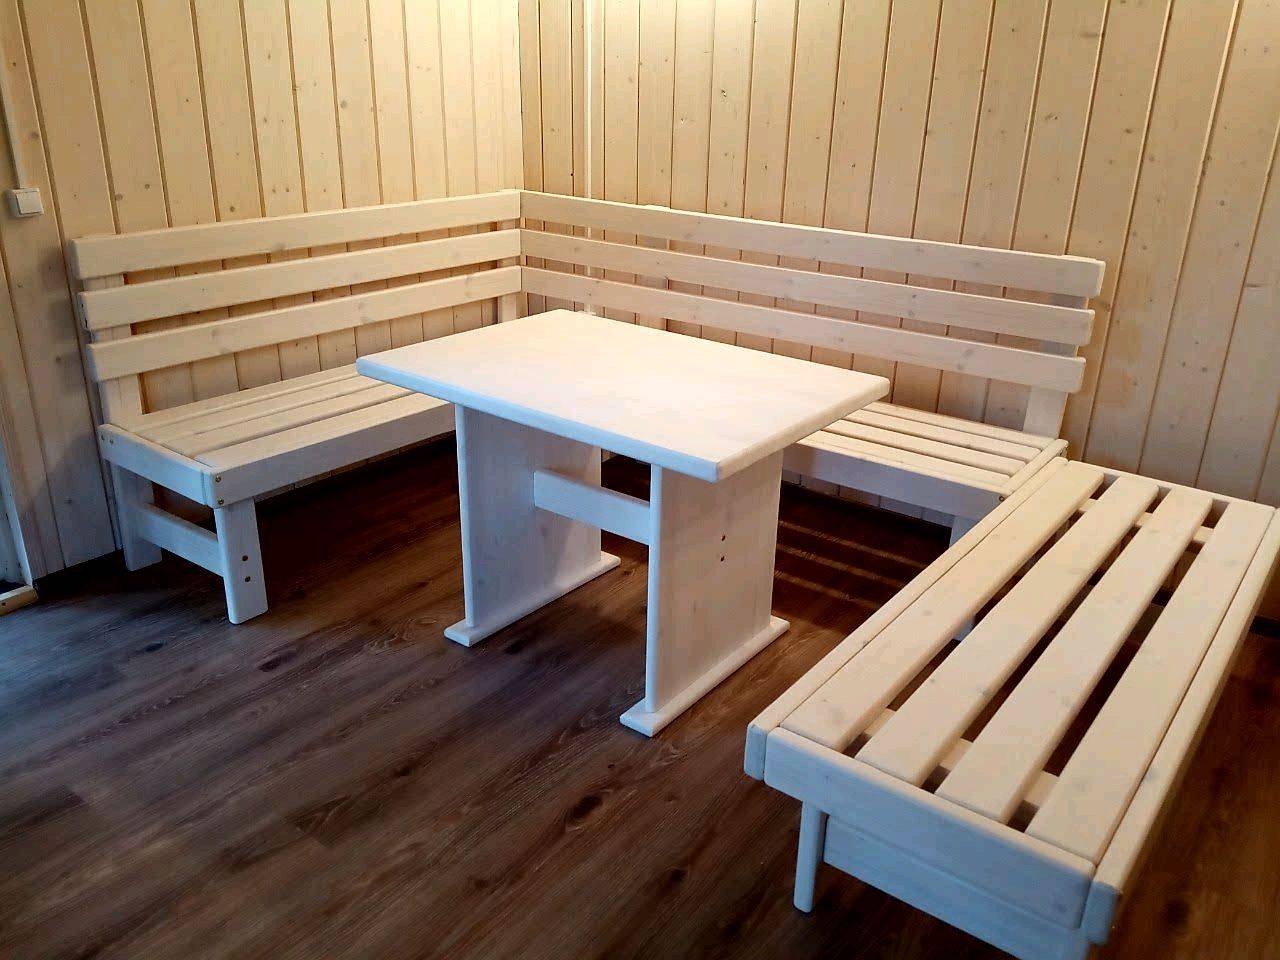 Мебель из дерева для бани: как сделать своими руками, чертежи и схемы сборки, вешалка, стол и стулья